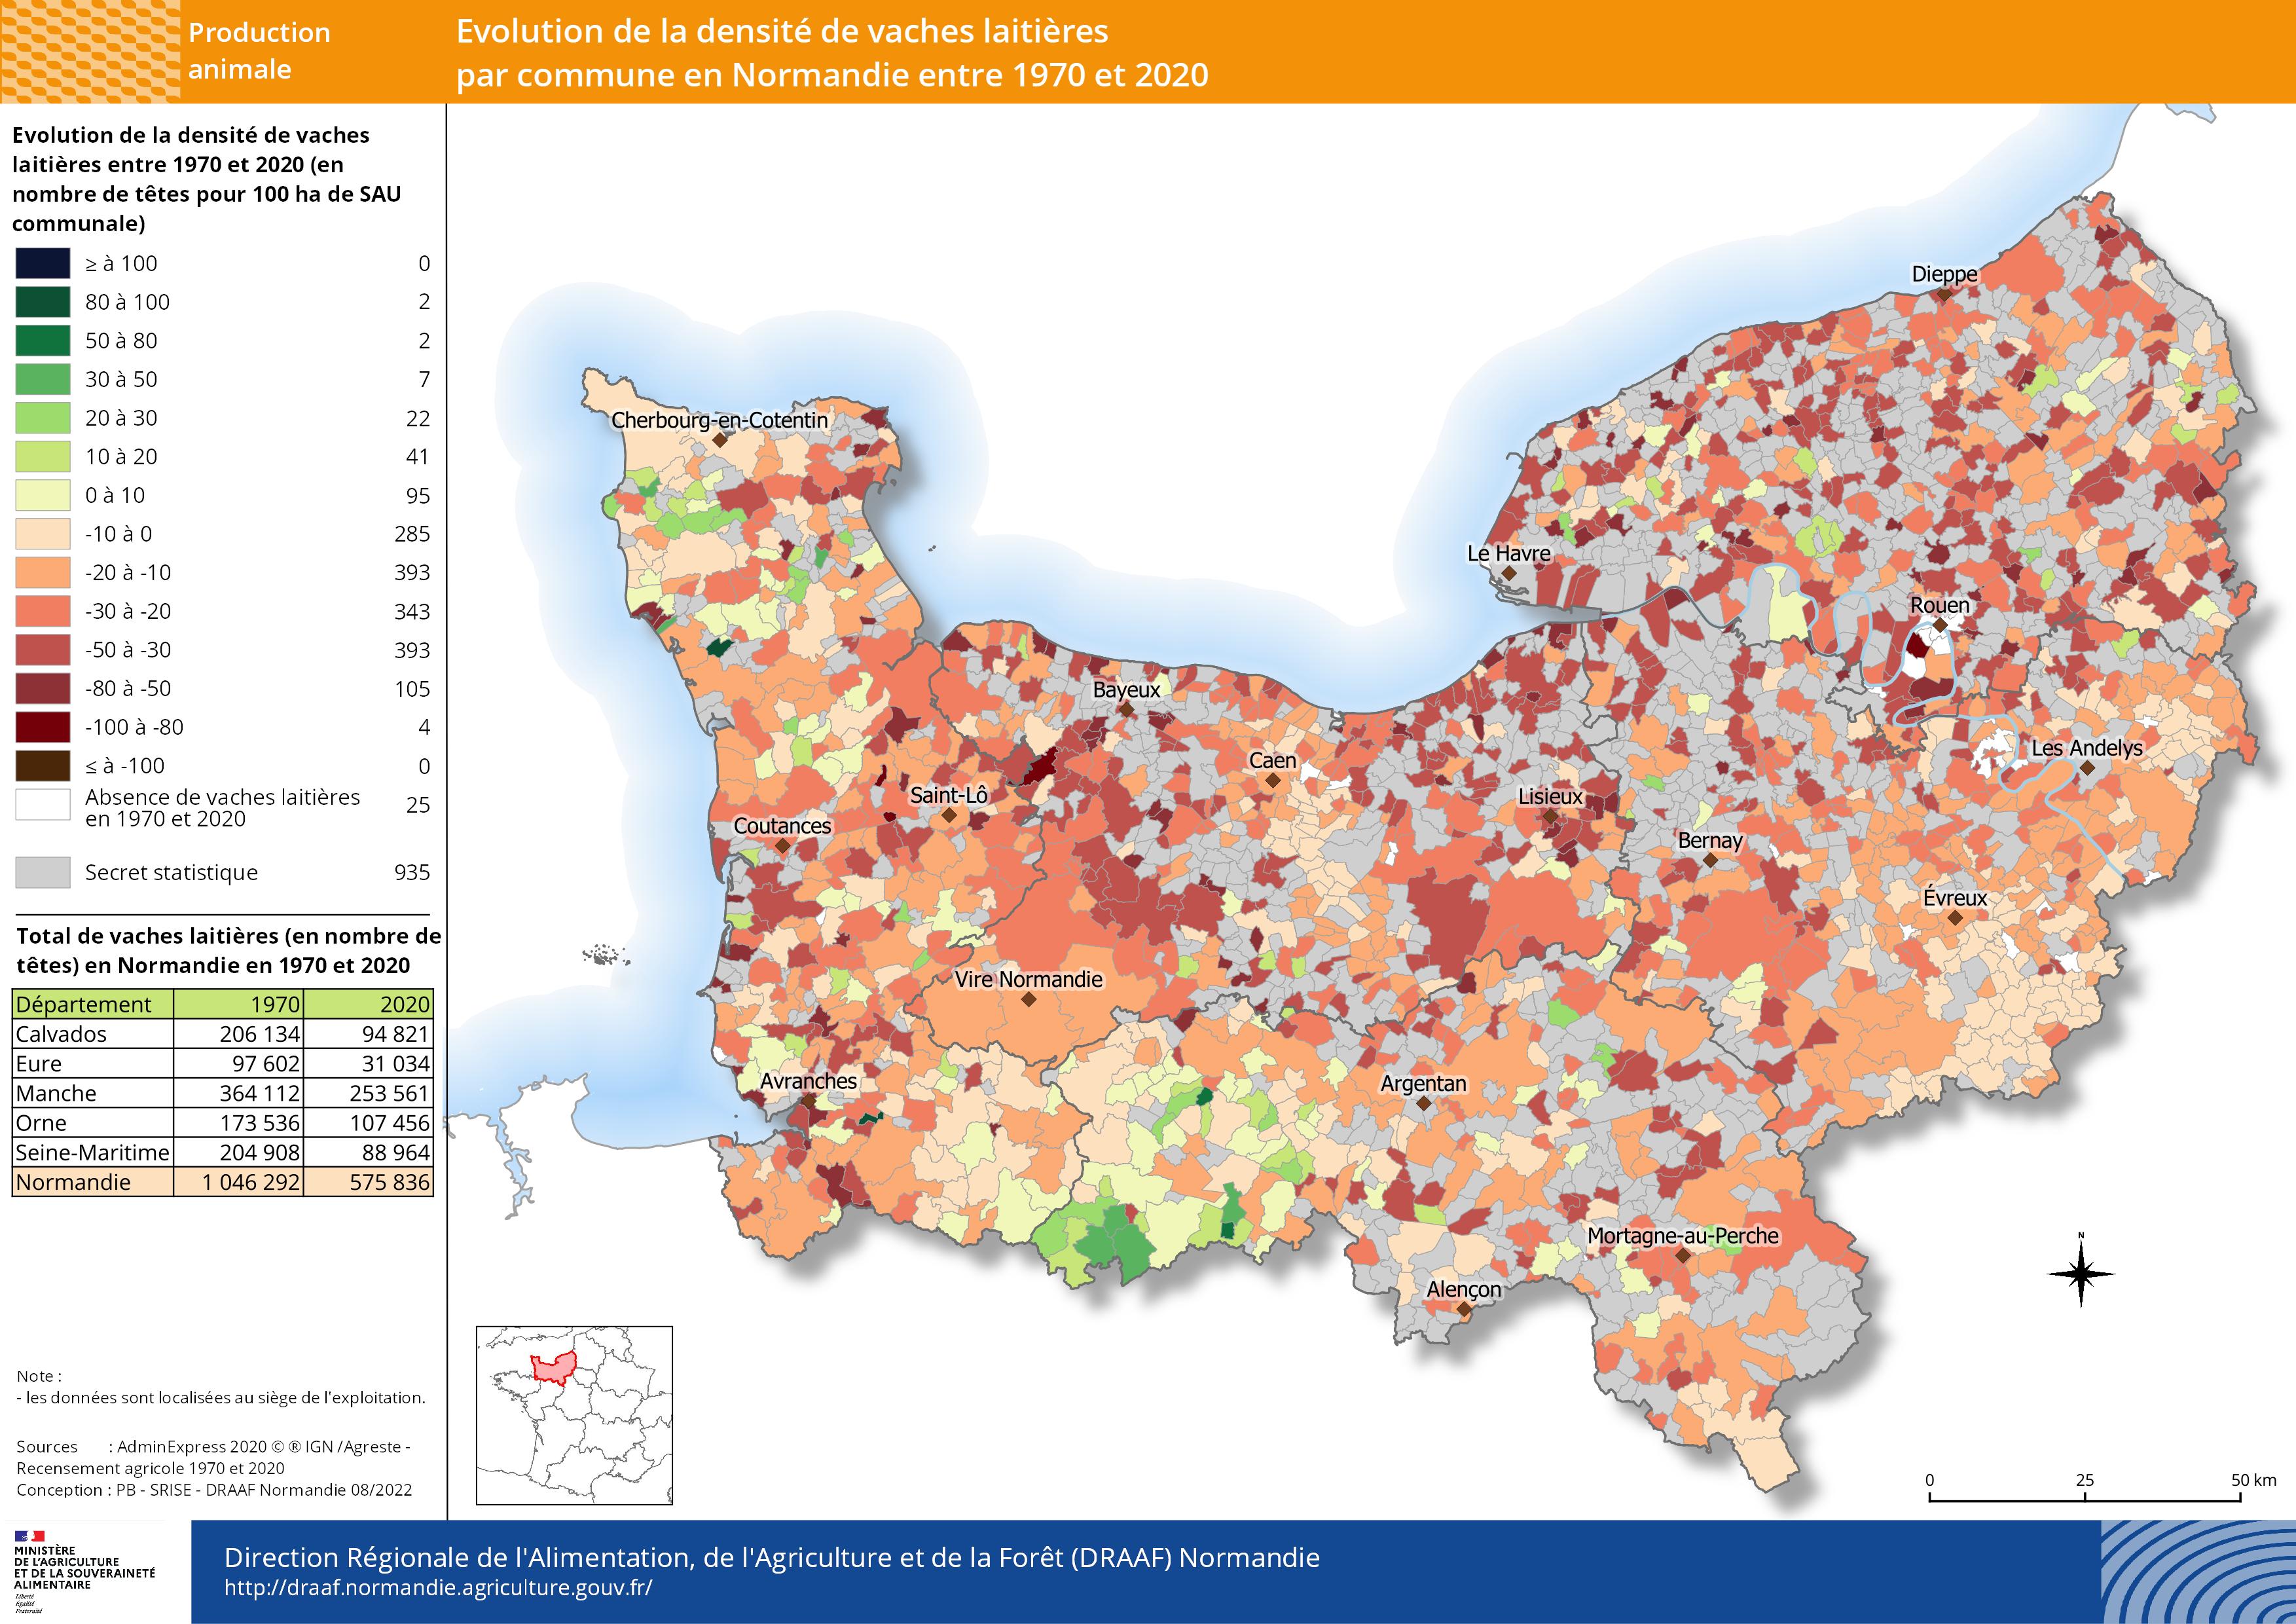 carte représentant l'évolution de la densité de vaches laitières par commune en Normandie entre 1970 et 2020